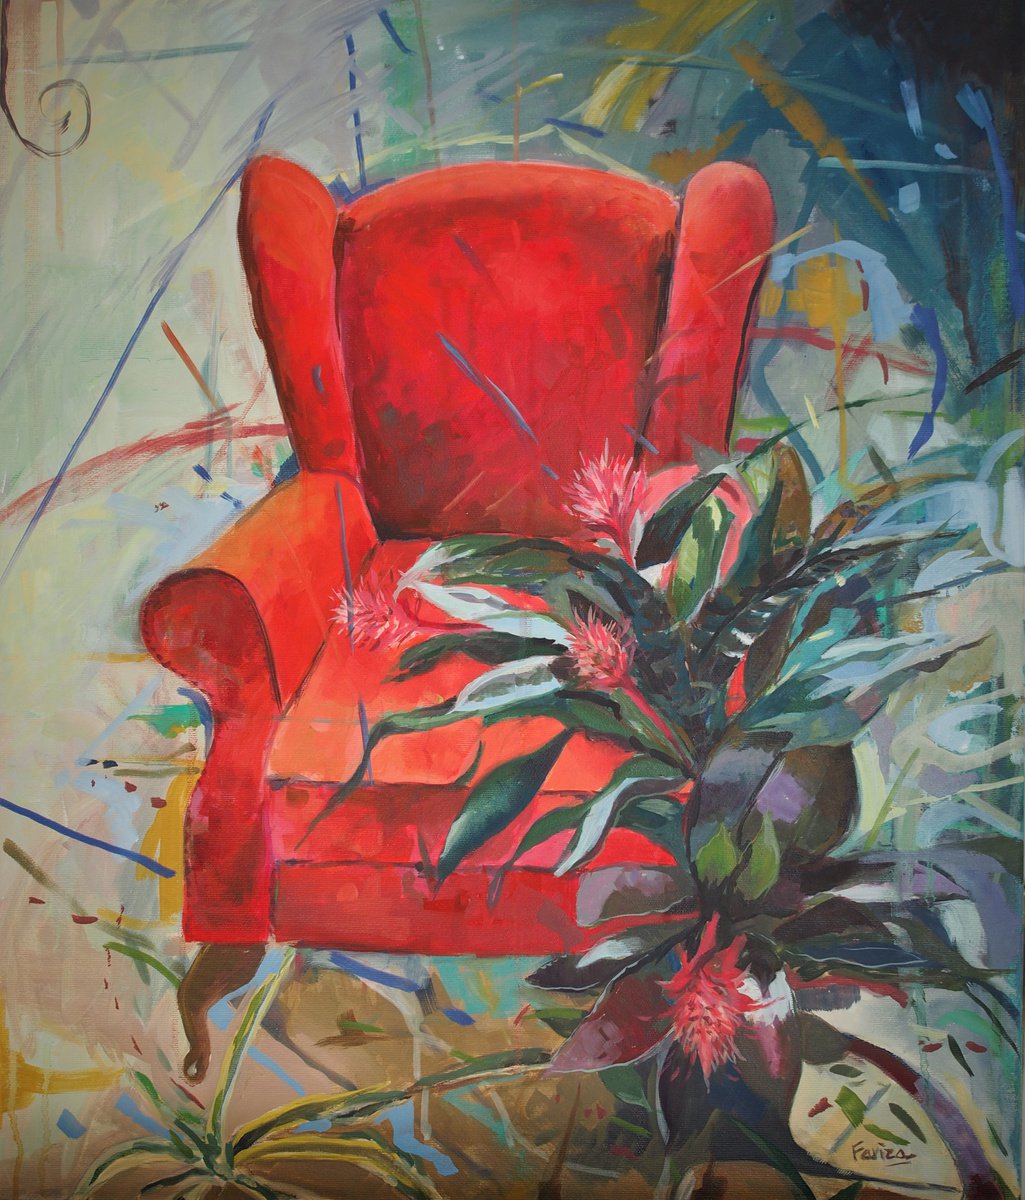 Red armchair by Amaya Fernandez Fariza